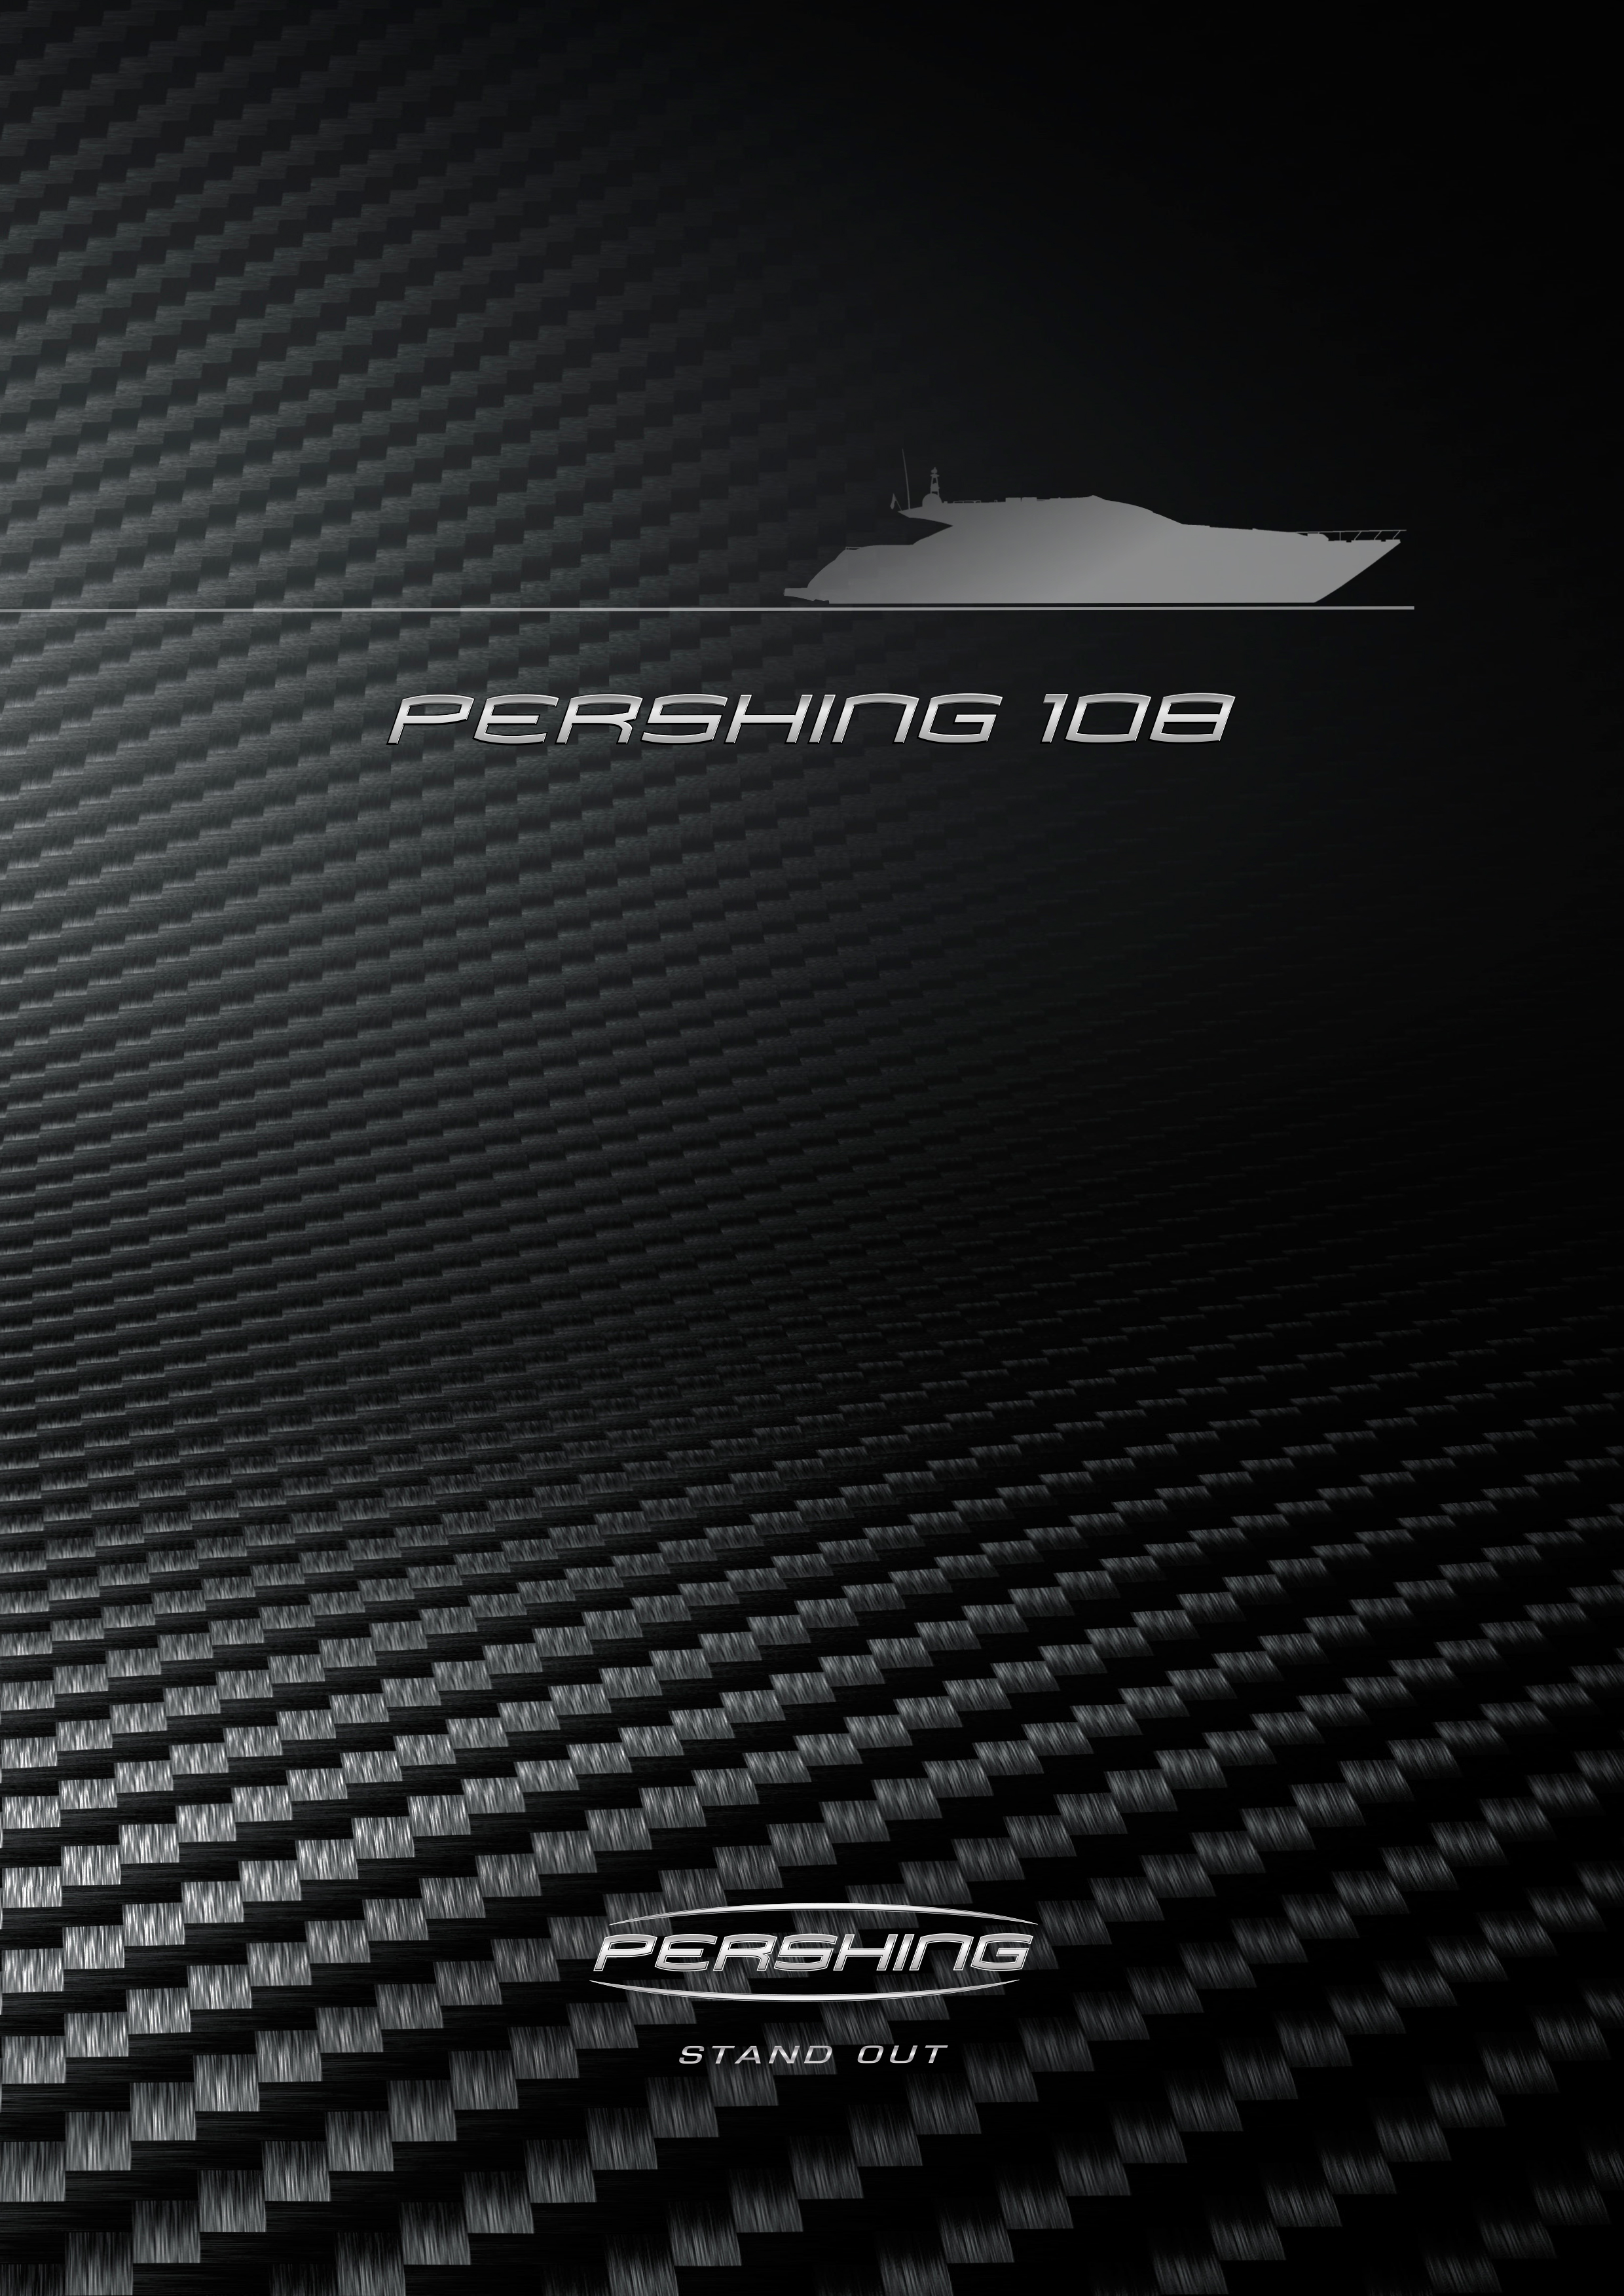 Pershing 108 - Equipment